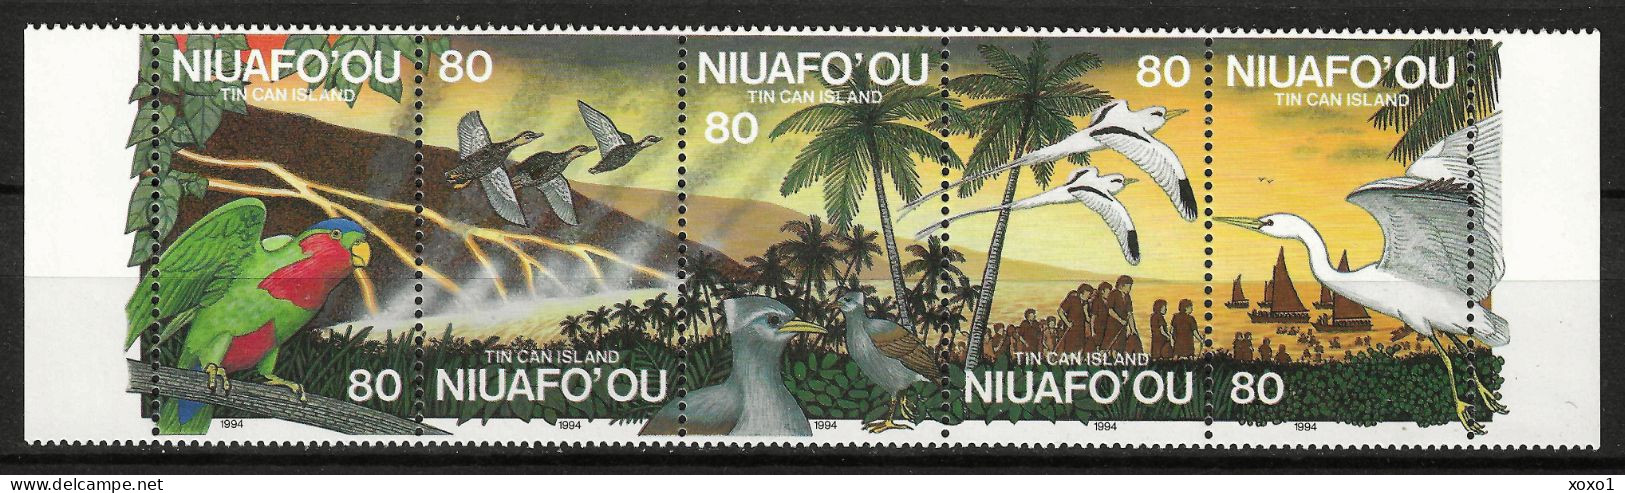 Niuafo'Ou 1994 MiNr. 269 - 273 Niuafo'ou-Insel Geology, Volcanos, Volcanic Eruption, Birds  5v MNH** 14,00 € - Volcanes